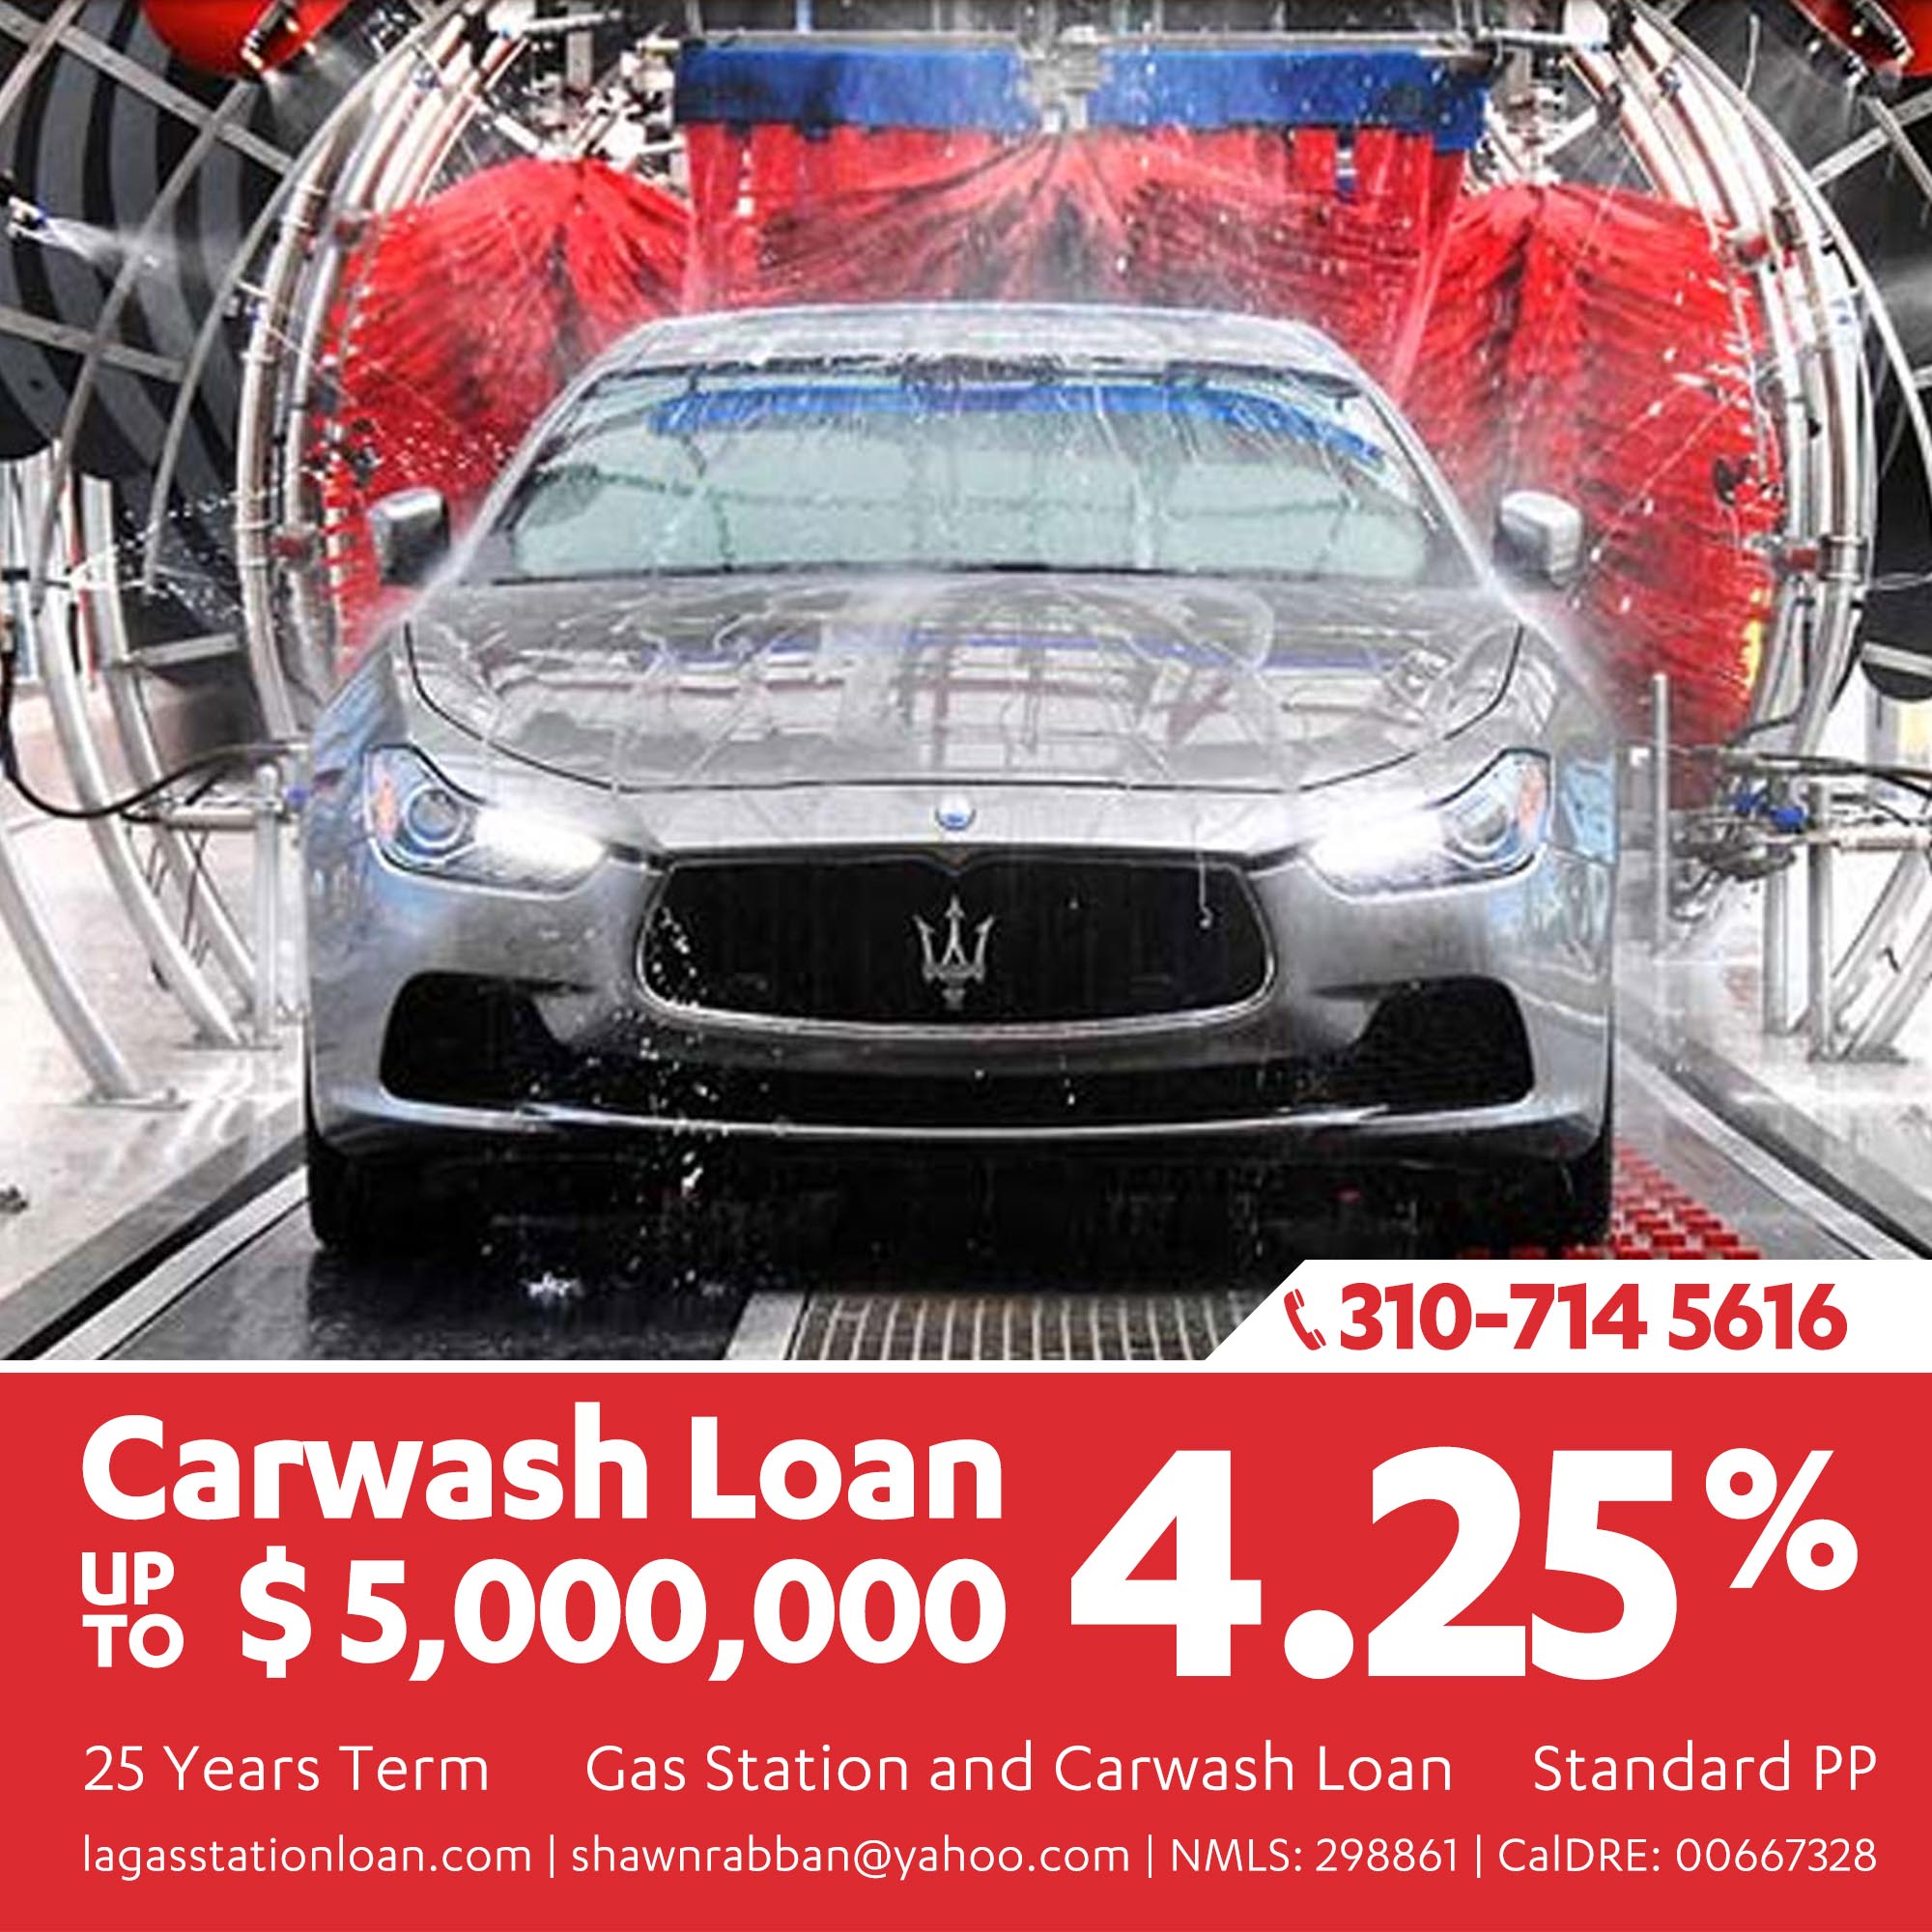 Car Wash Loan